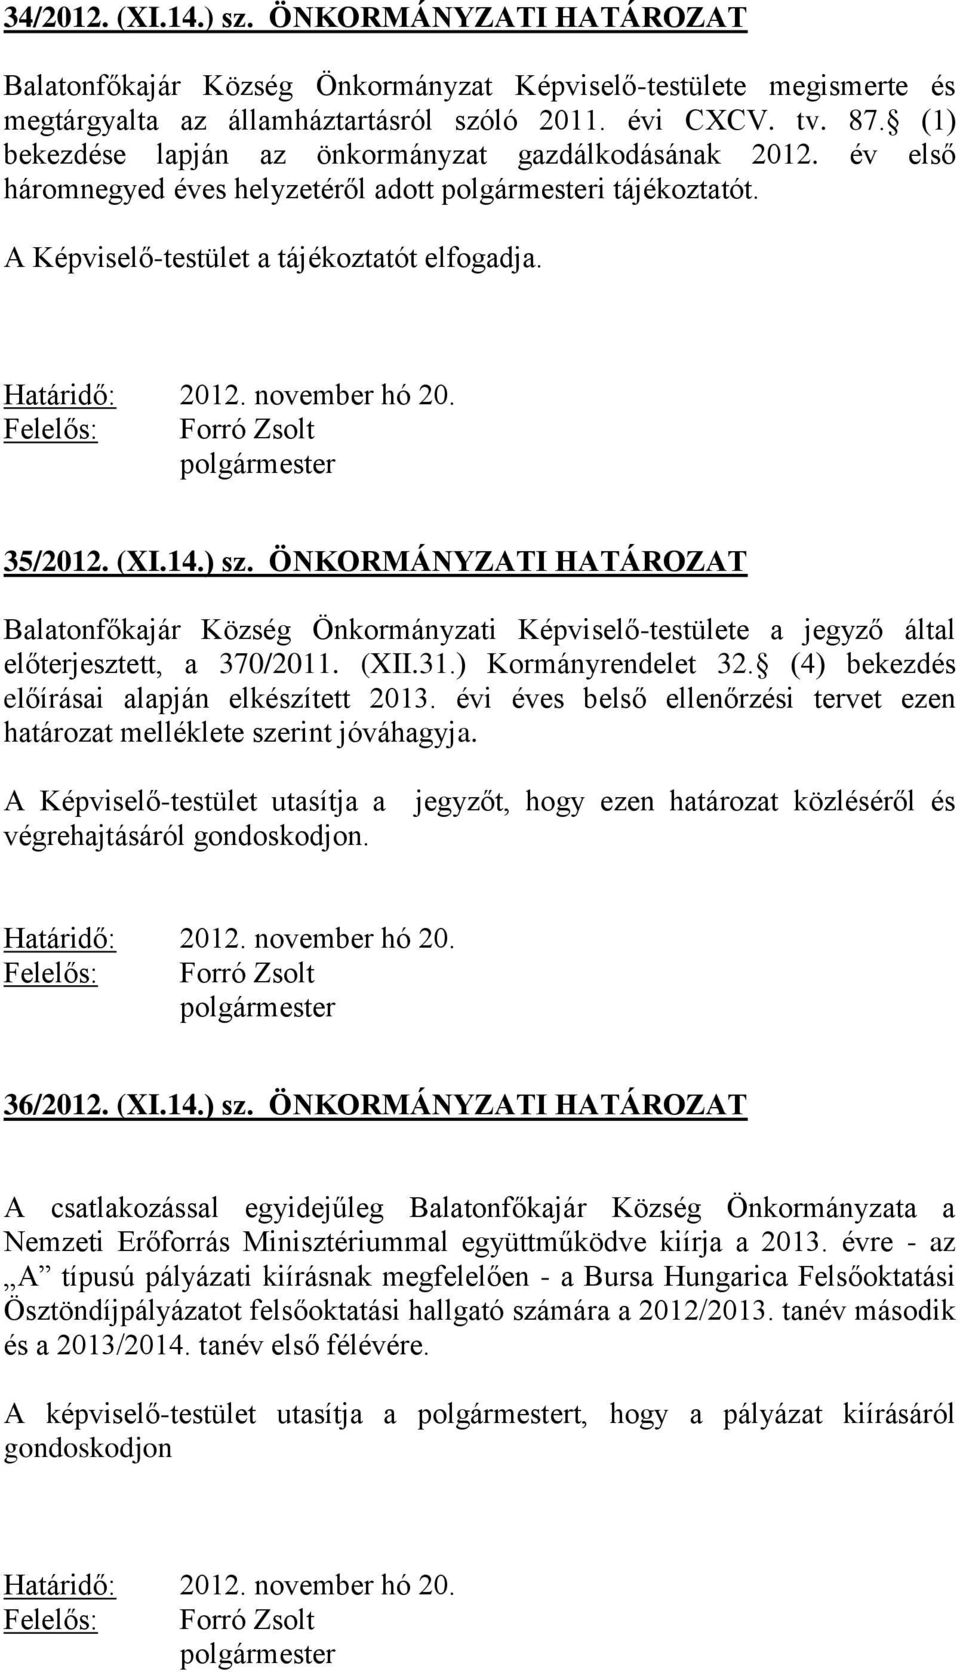 14.) sz. ÖNKORMÁNYZATI HATÁROZAT Balatonfőkajár Község Önkormányzati Képviselő-testülete a jegyző által előterjesztett, a 370/2011. (XII.31.) Kormányrendelet 32.